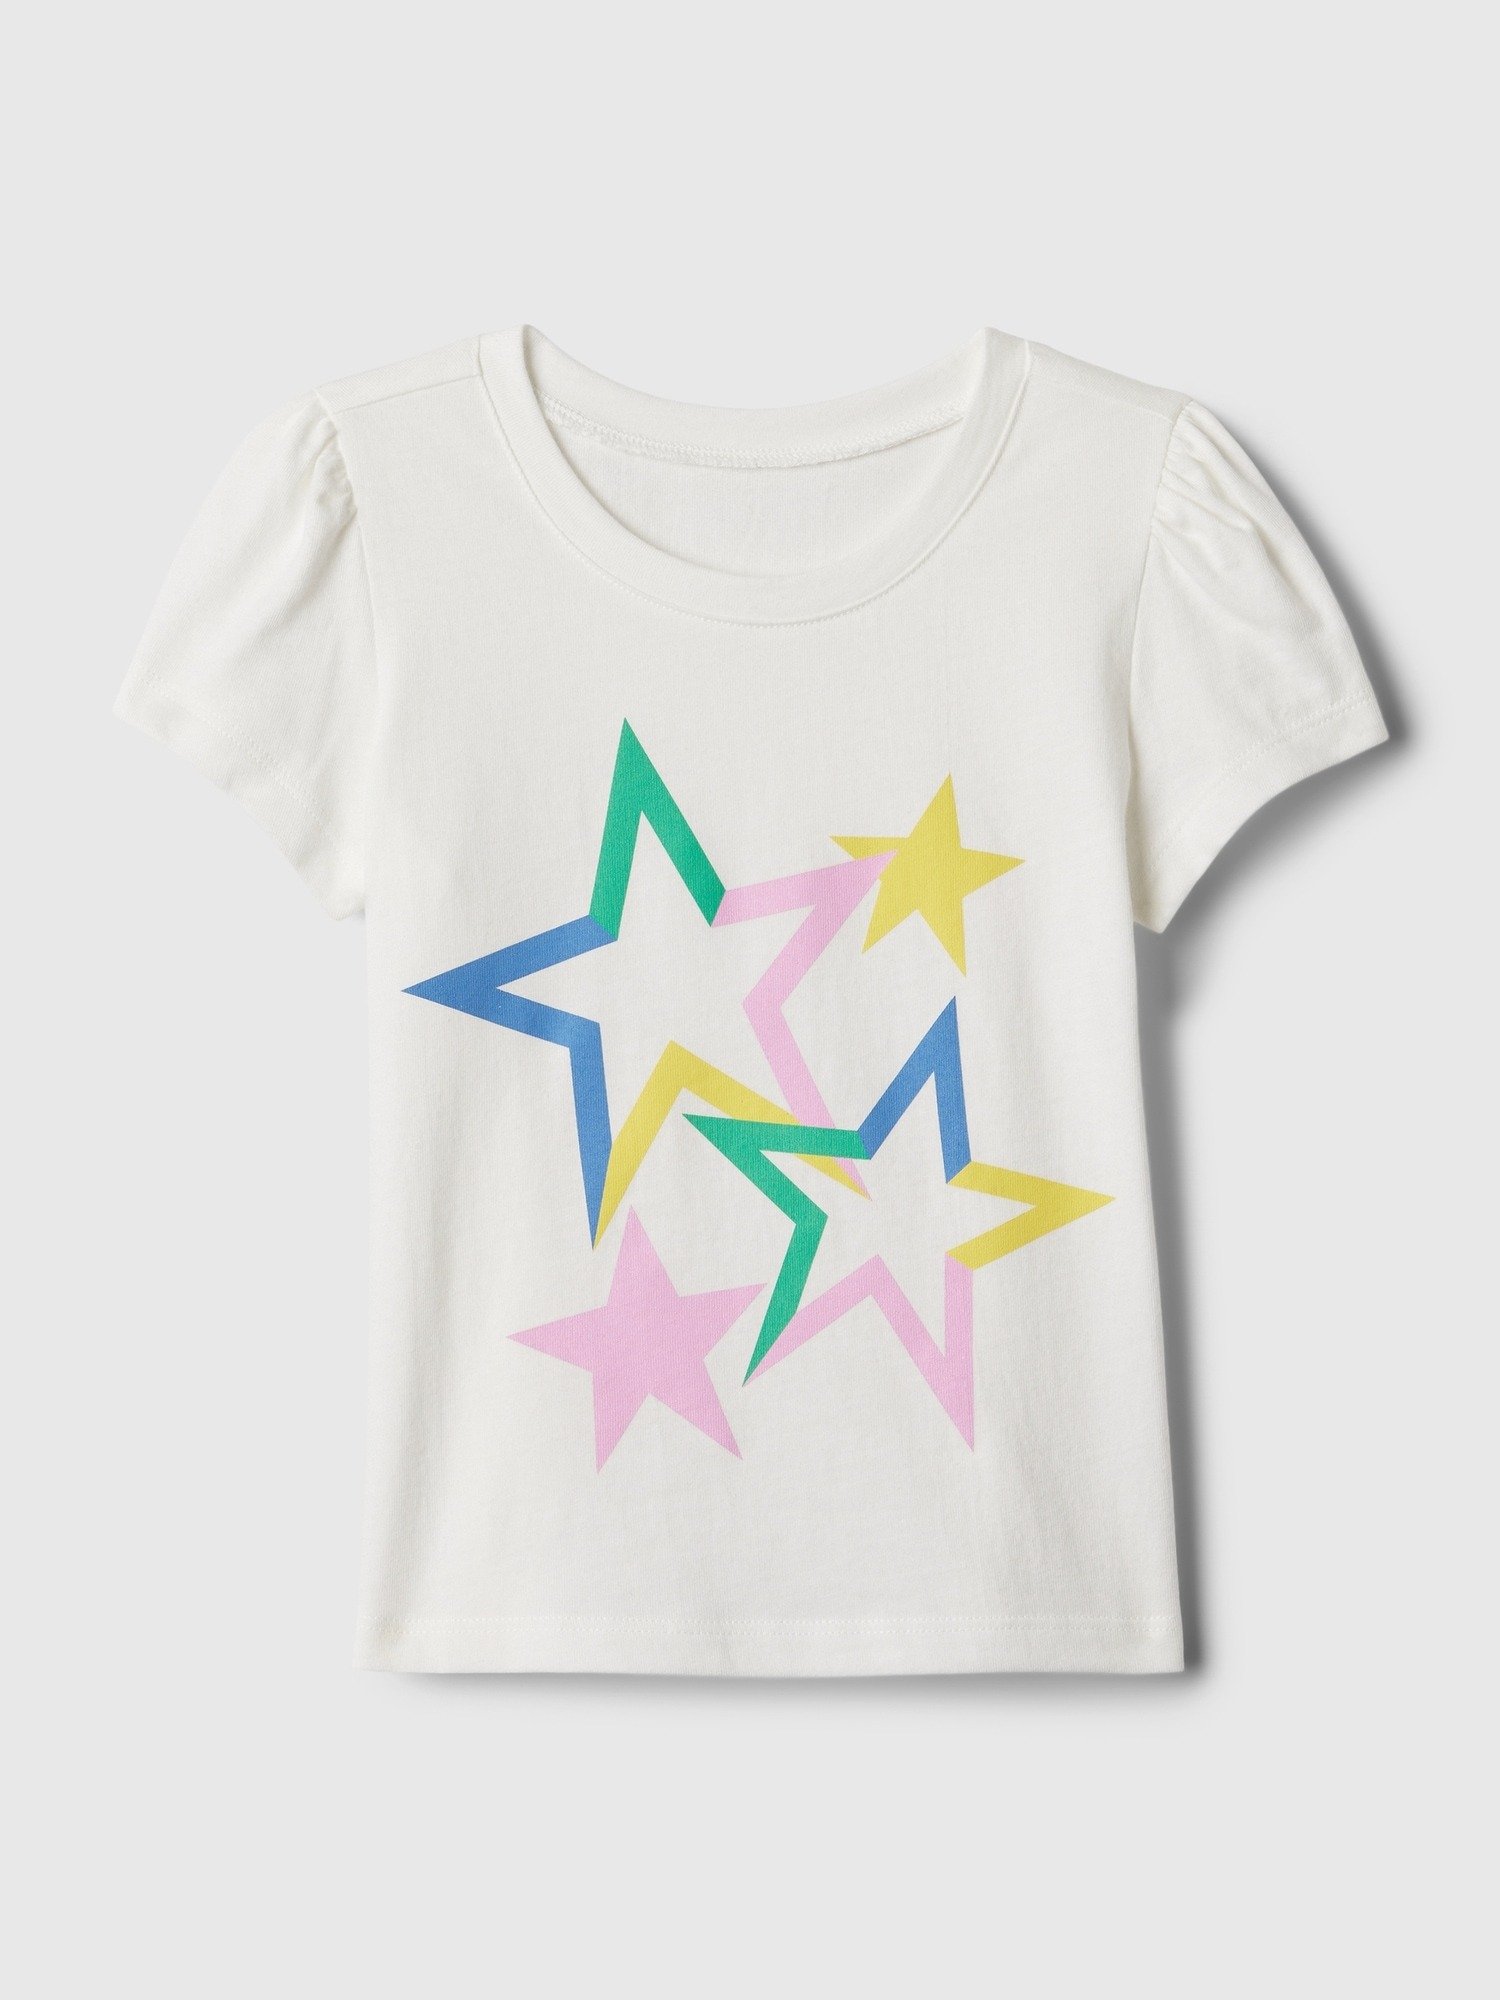 Mix and Match Grafikli T-Shirt product image